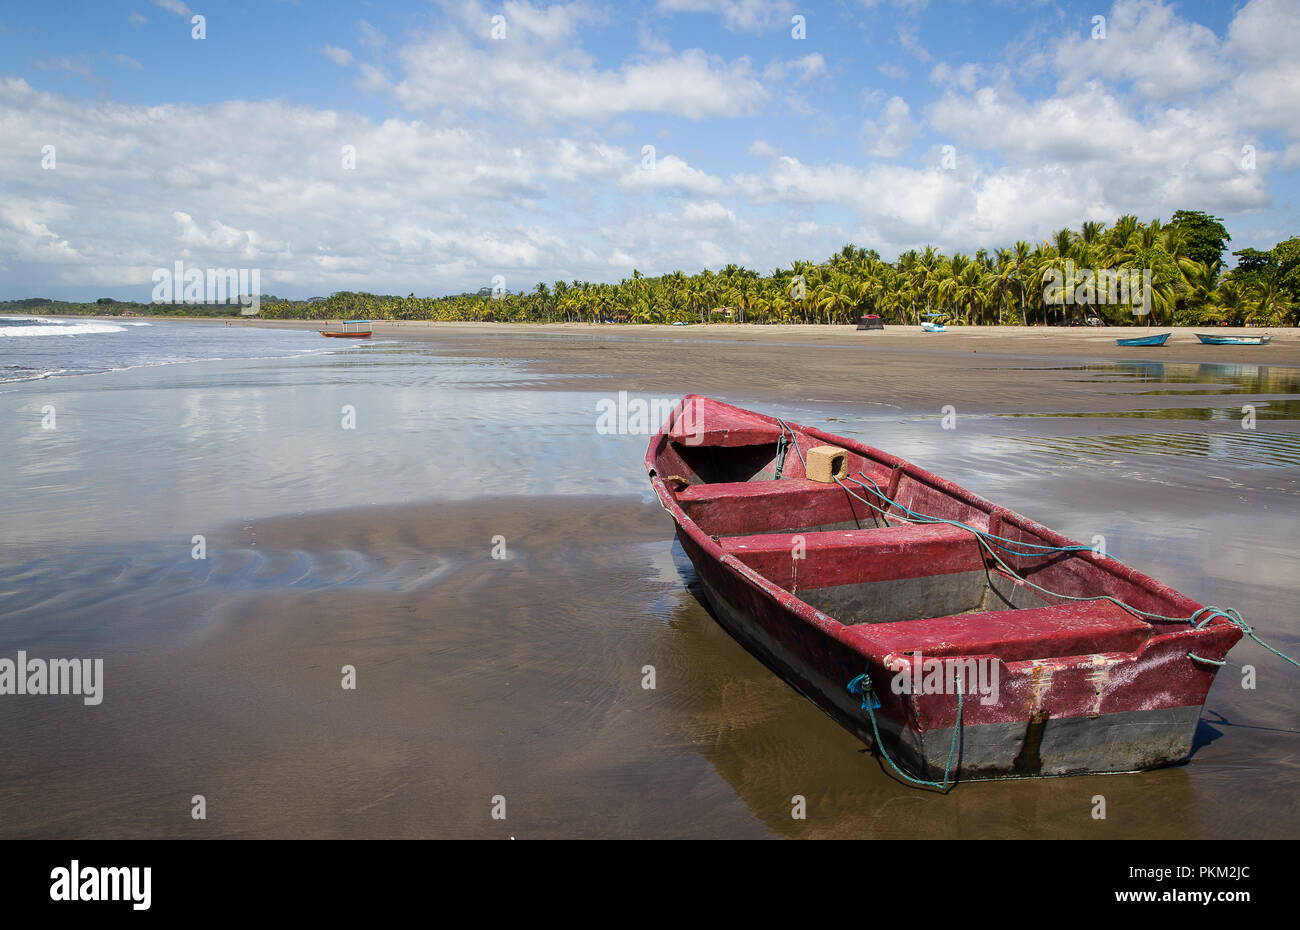 Boat and beautiful beach in Esterillos, Costa Rica Stock Photo